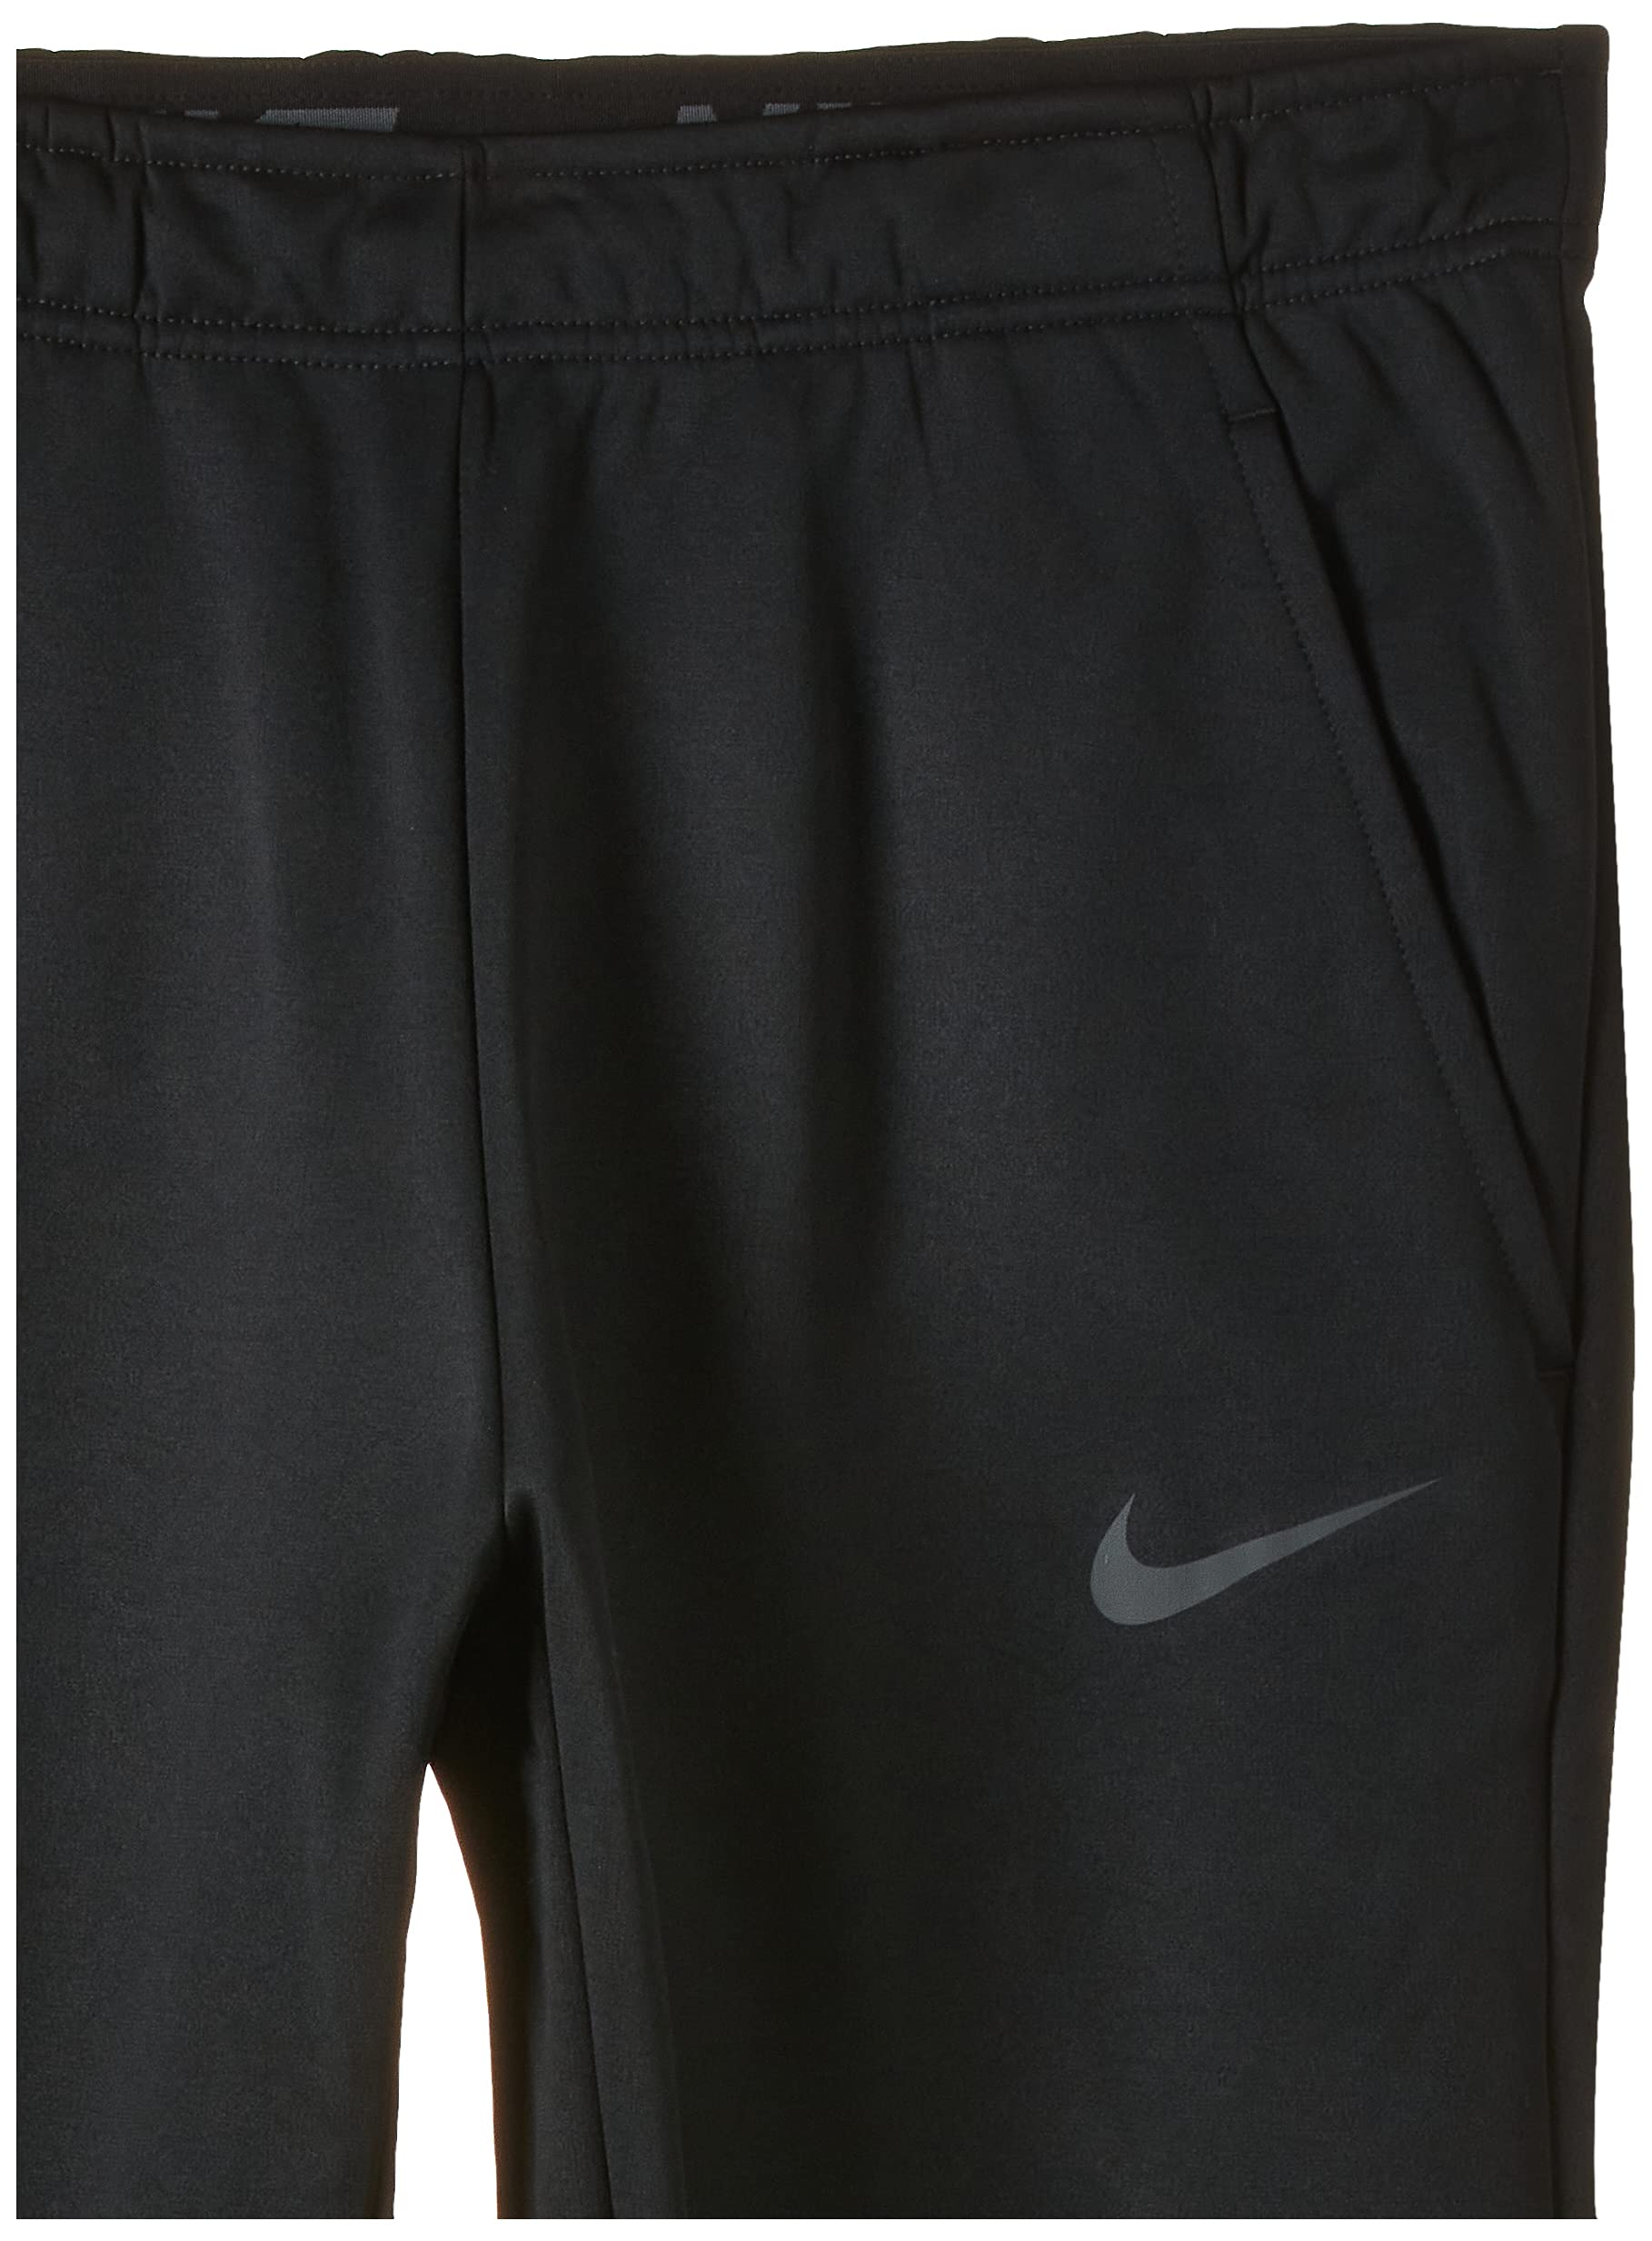 Mua Nike Men's Therma Tapered Running Pants trên Amazon Mỹ chính hãng 2023  | Giaonhan247